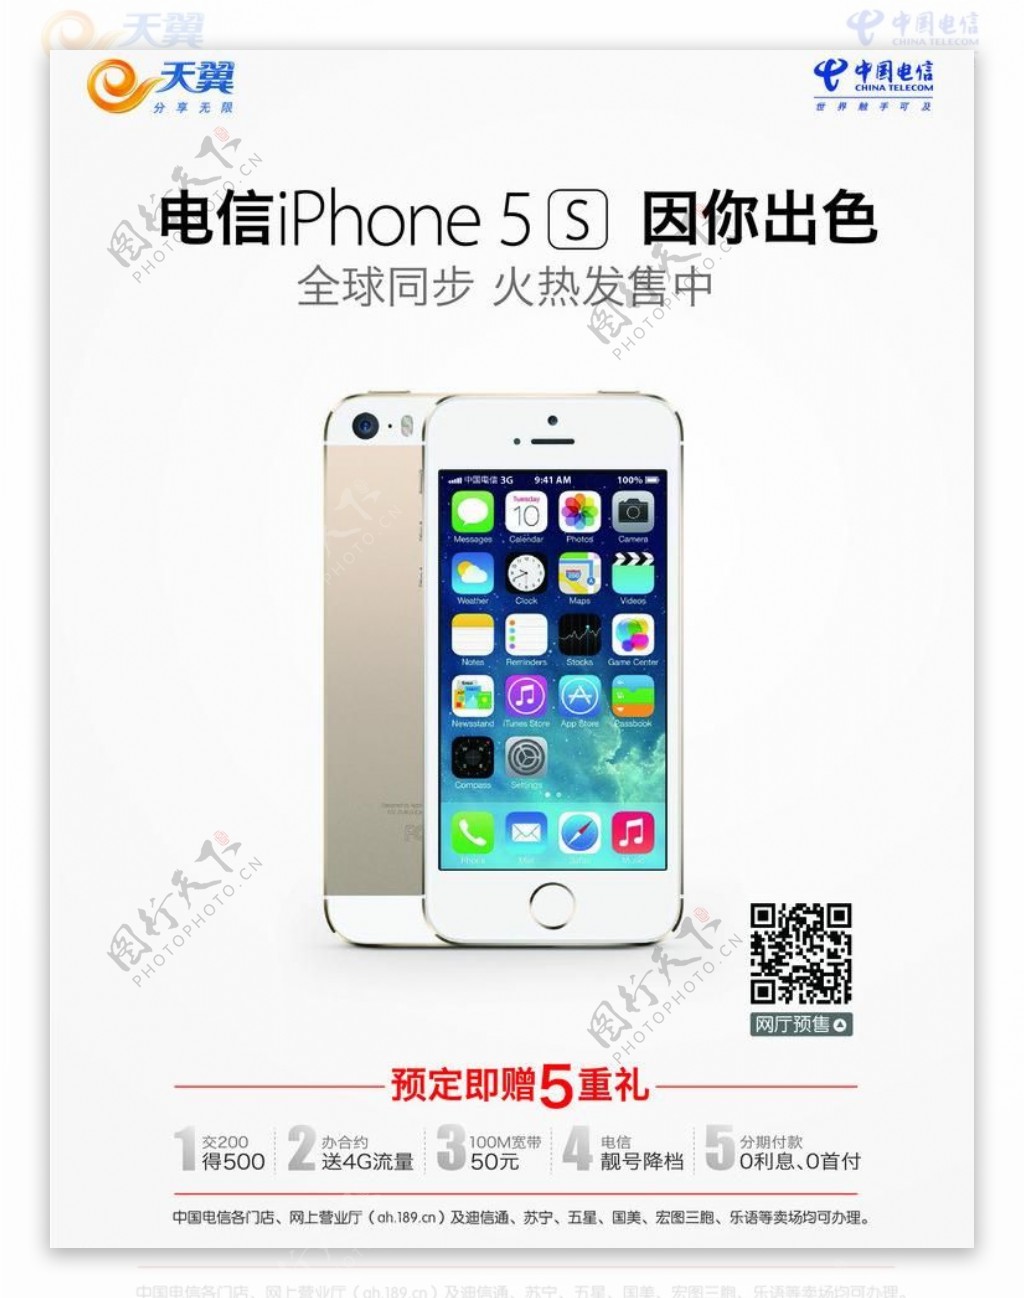 iphone5s宣传图片